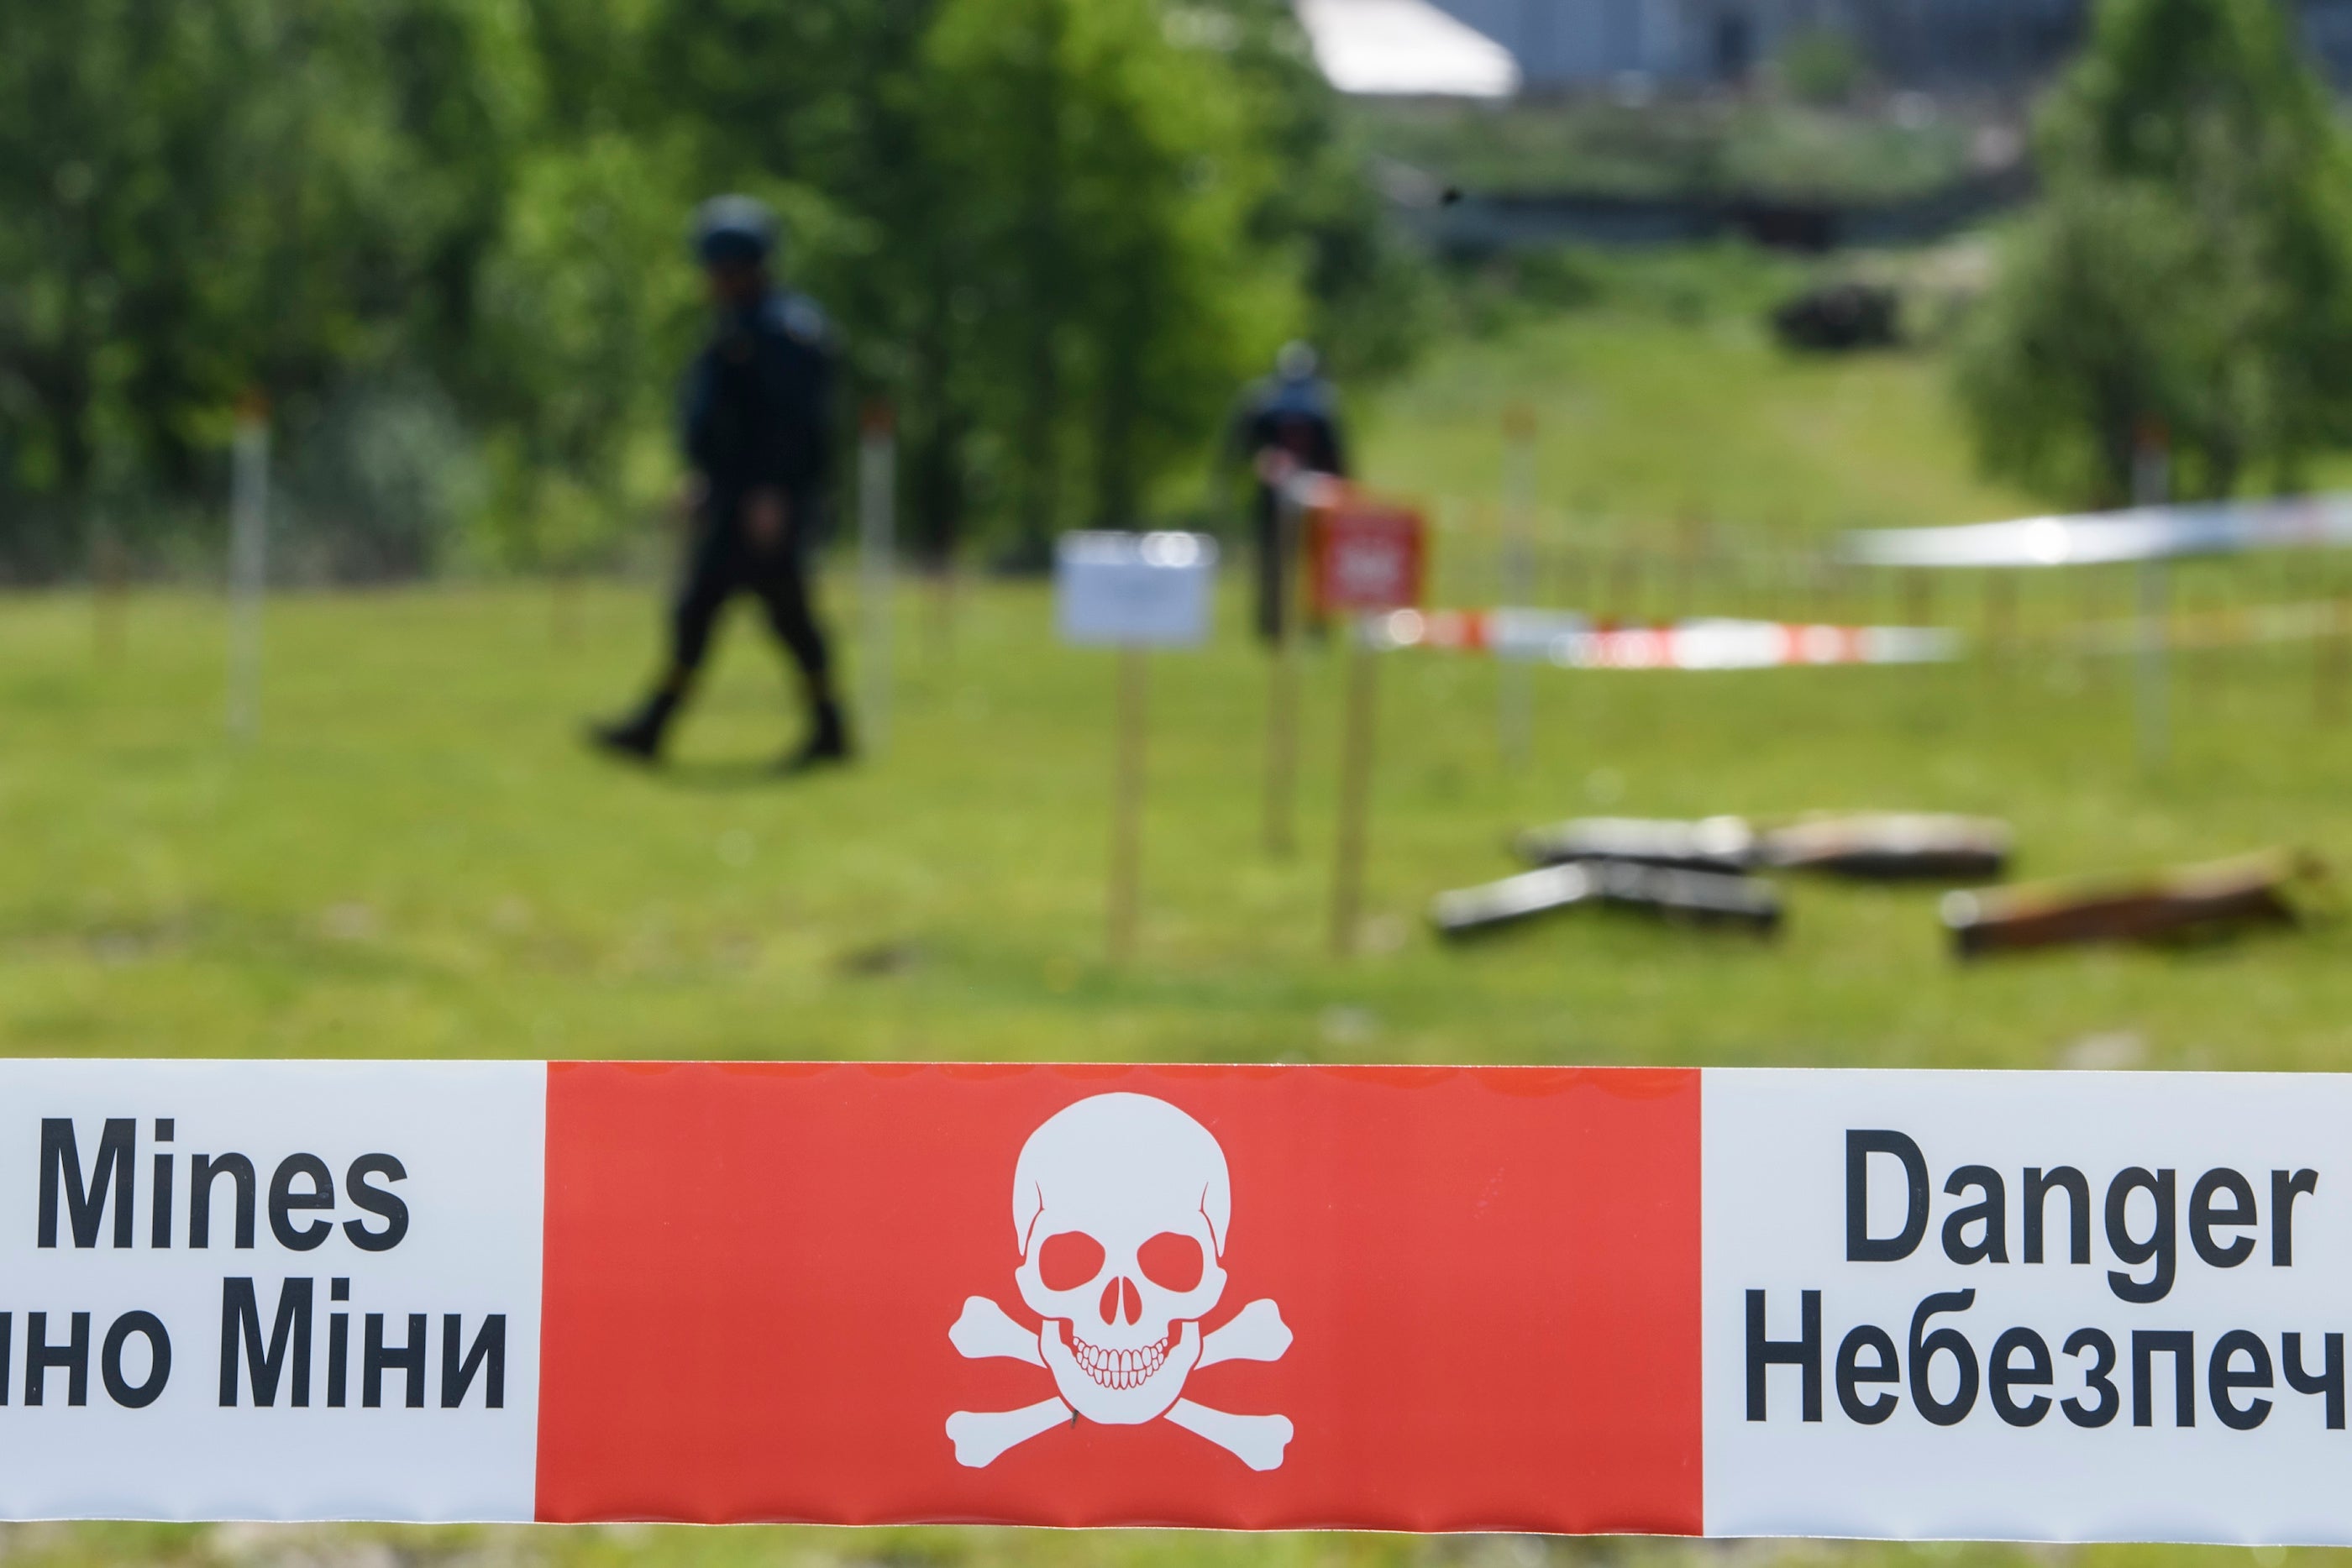 烏克蘭國家緊急狀態服務處的特種除雷小組正在執行掃除地雷任務，基輔州荷侖卡（Horenka）村，2022年5月27日。